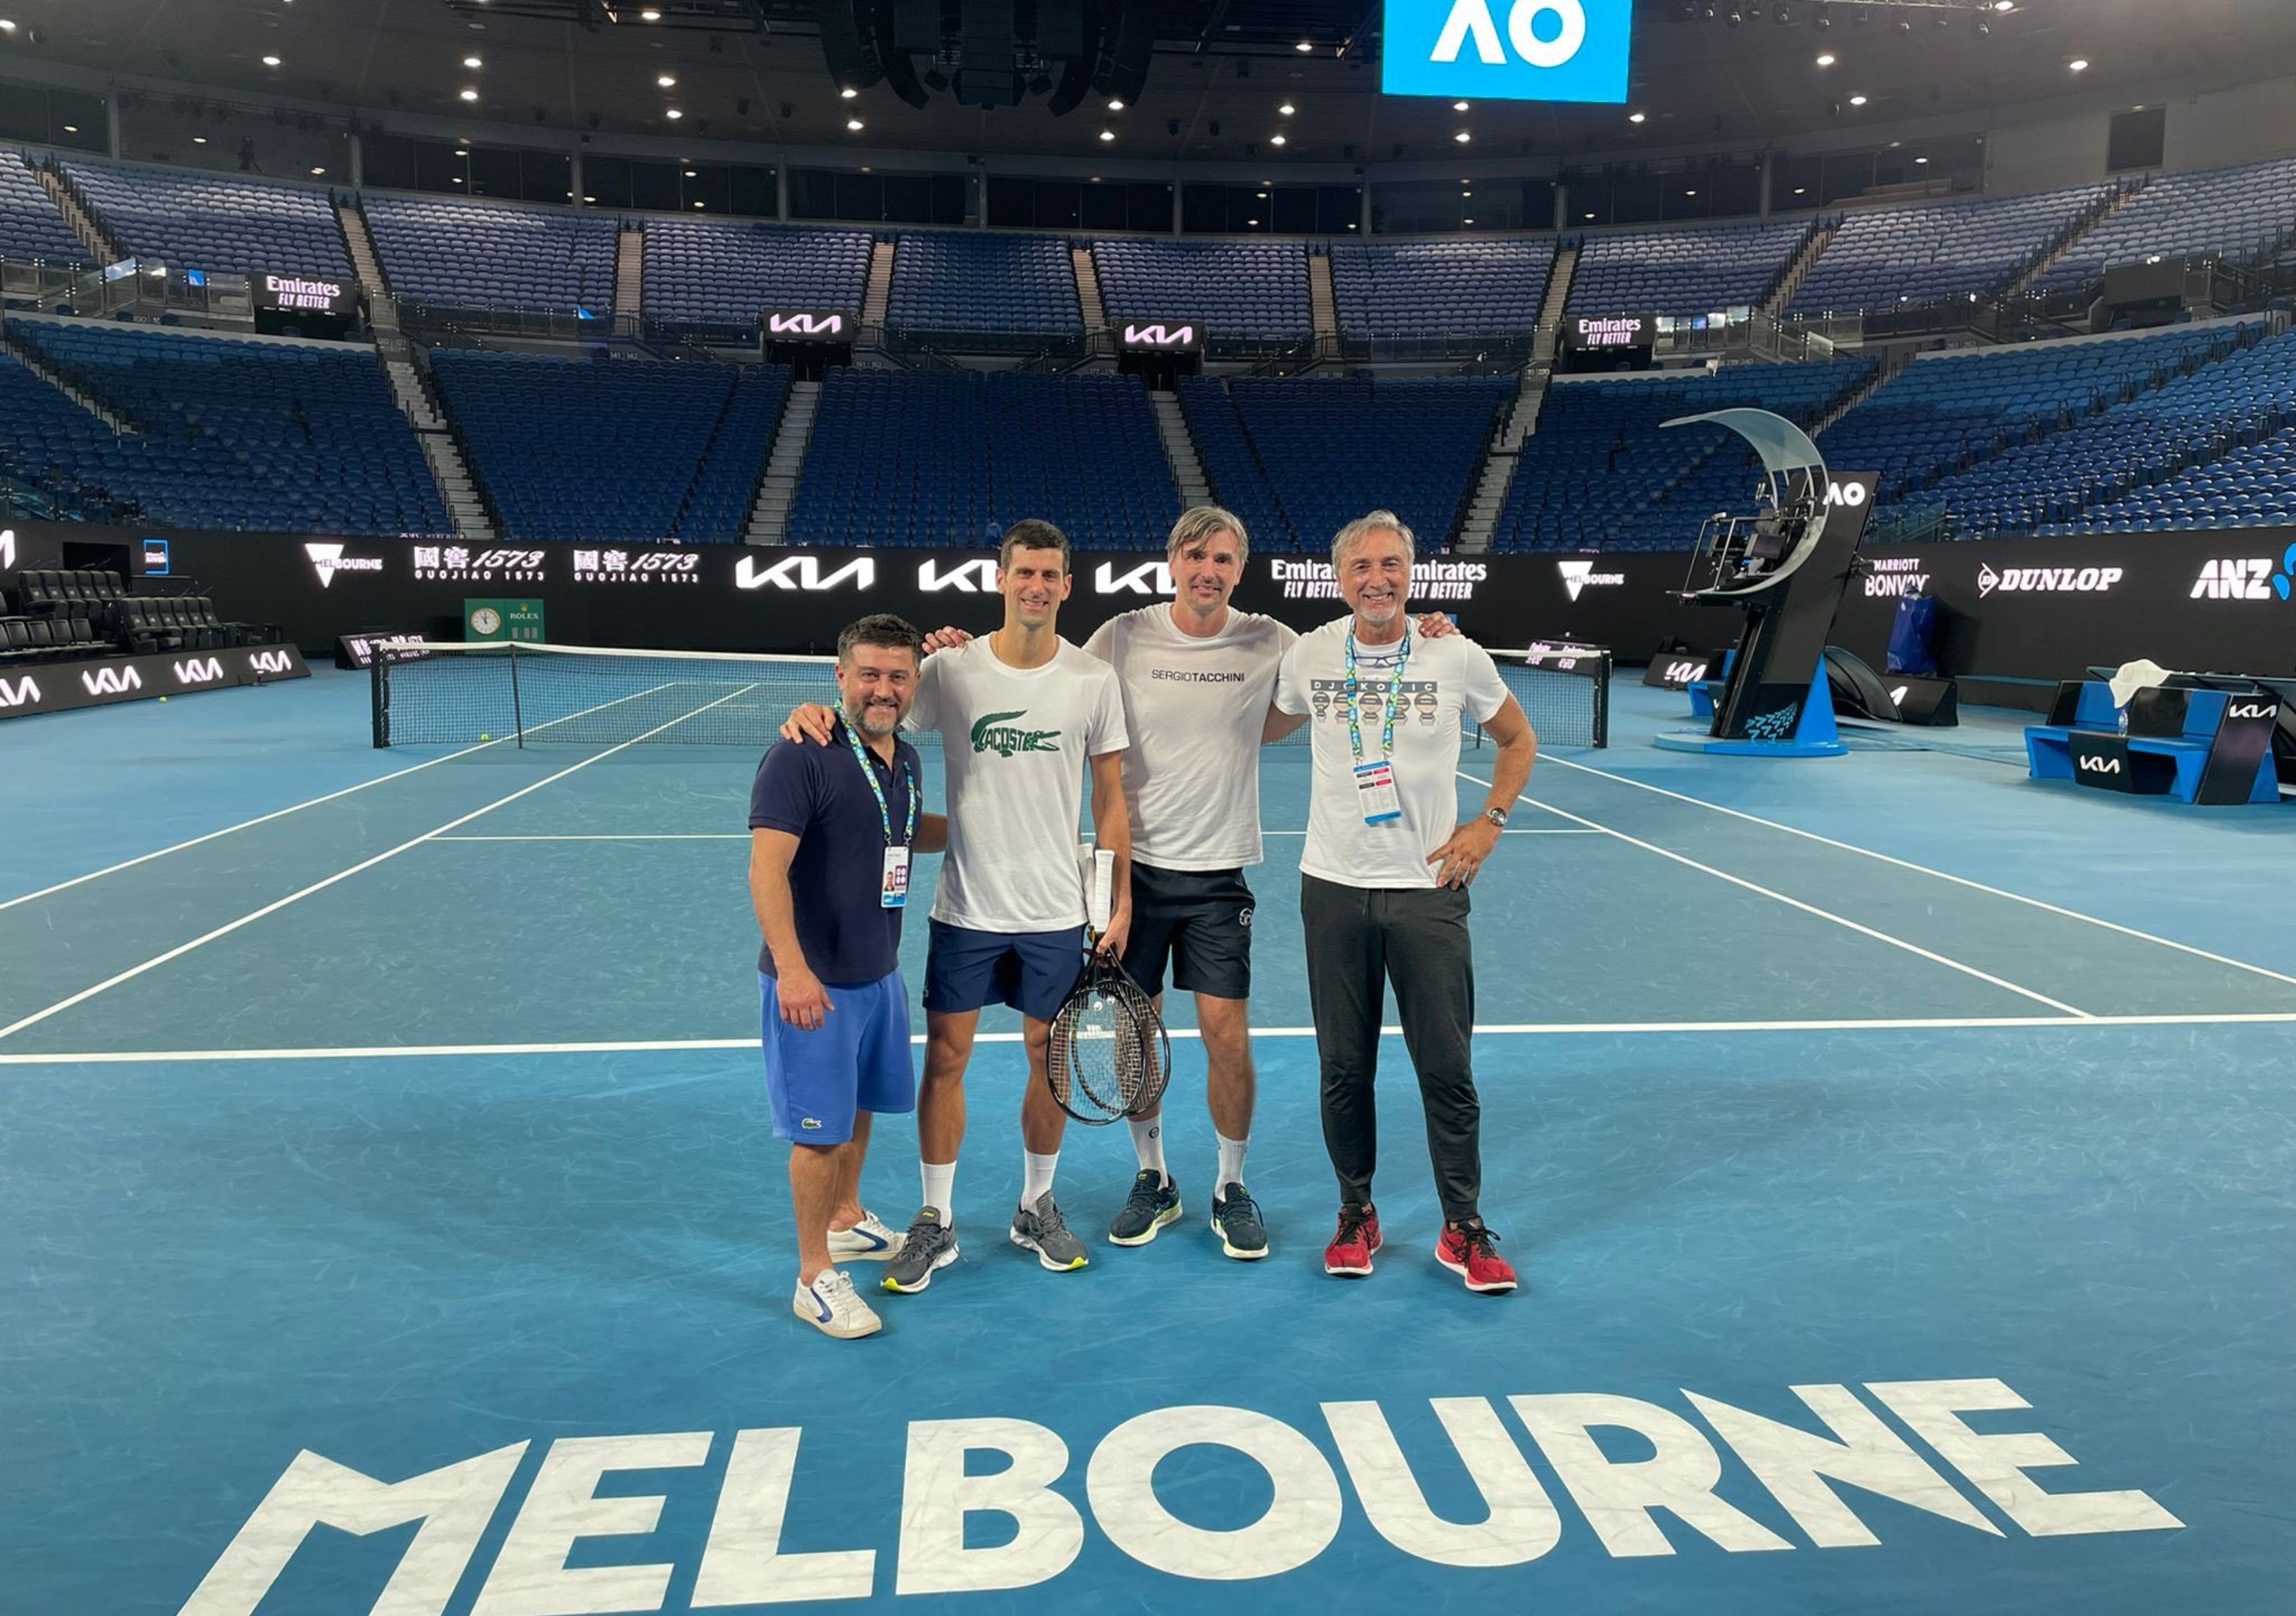 El tenista serbio publicó esta foto en su cuenta de Twitter en donde agradeció el apoyo que ha recibido en Australia por el asunto de su visado. Foto Novak Djokovic Twitter.